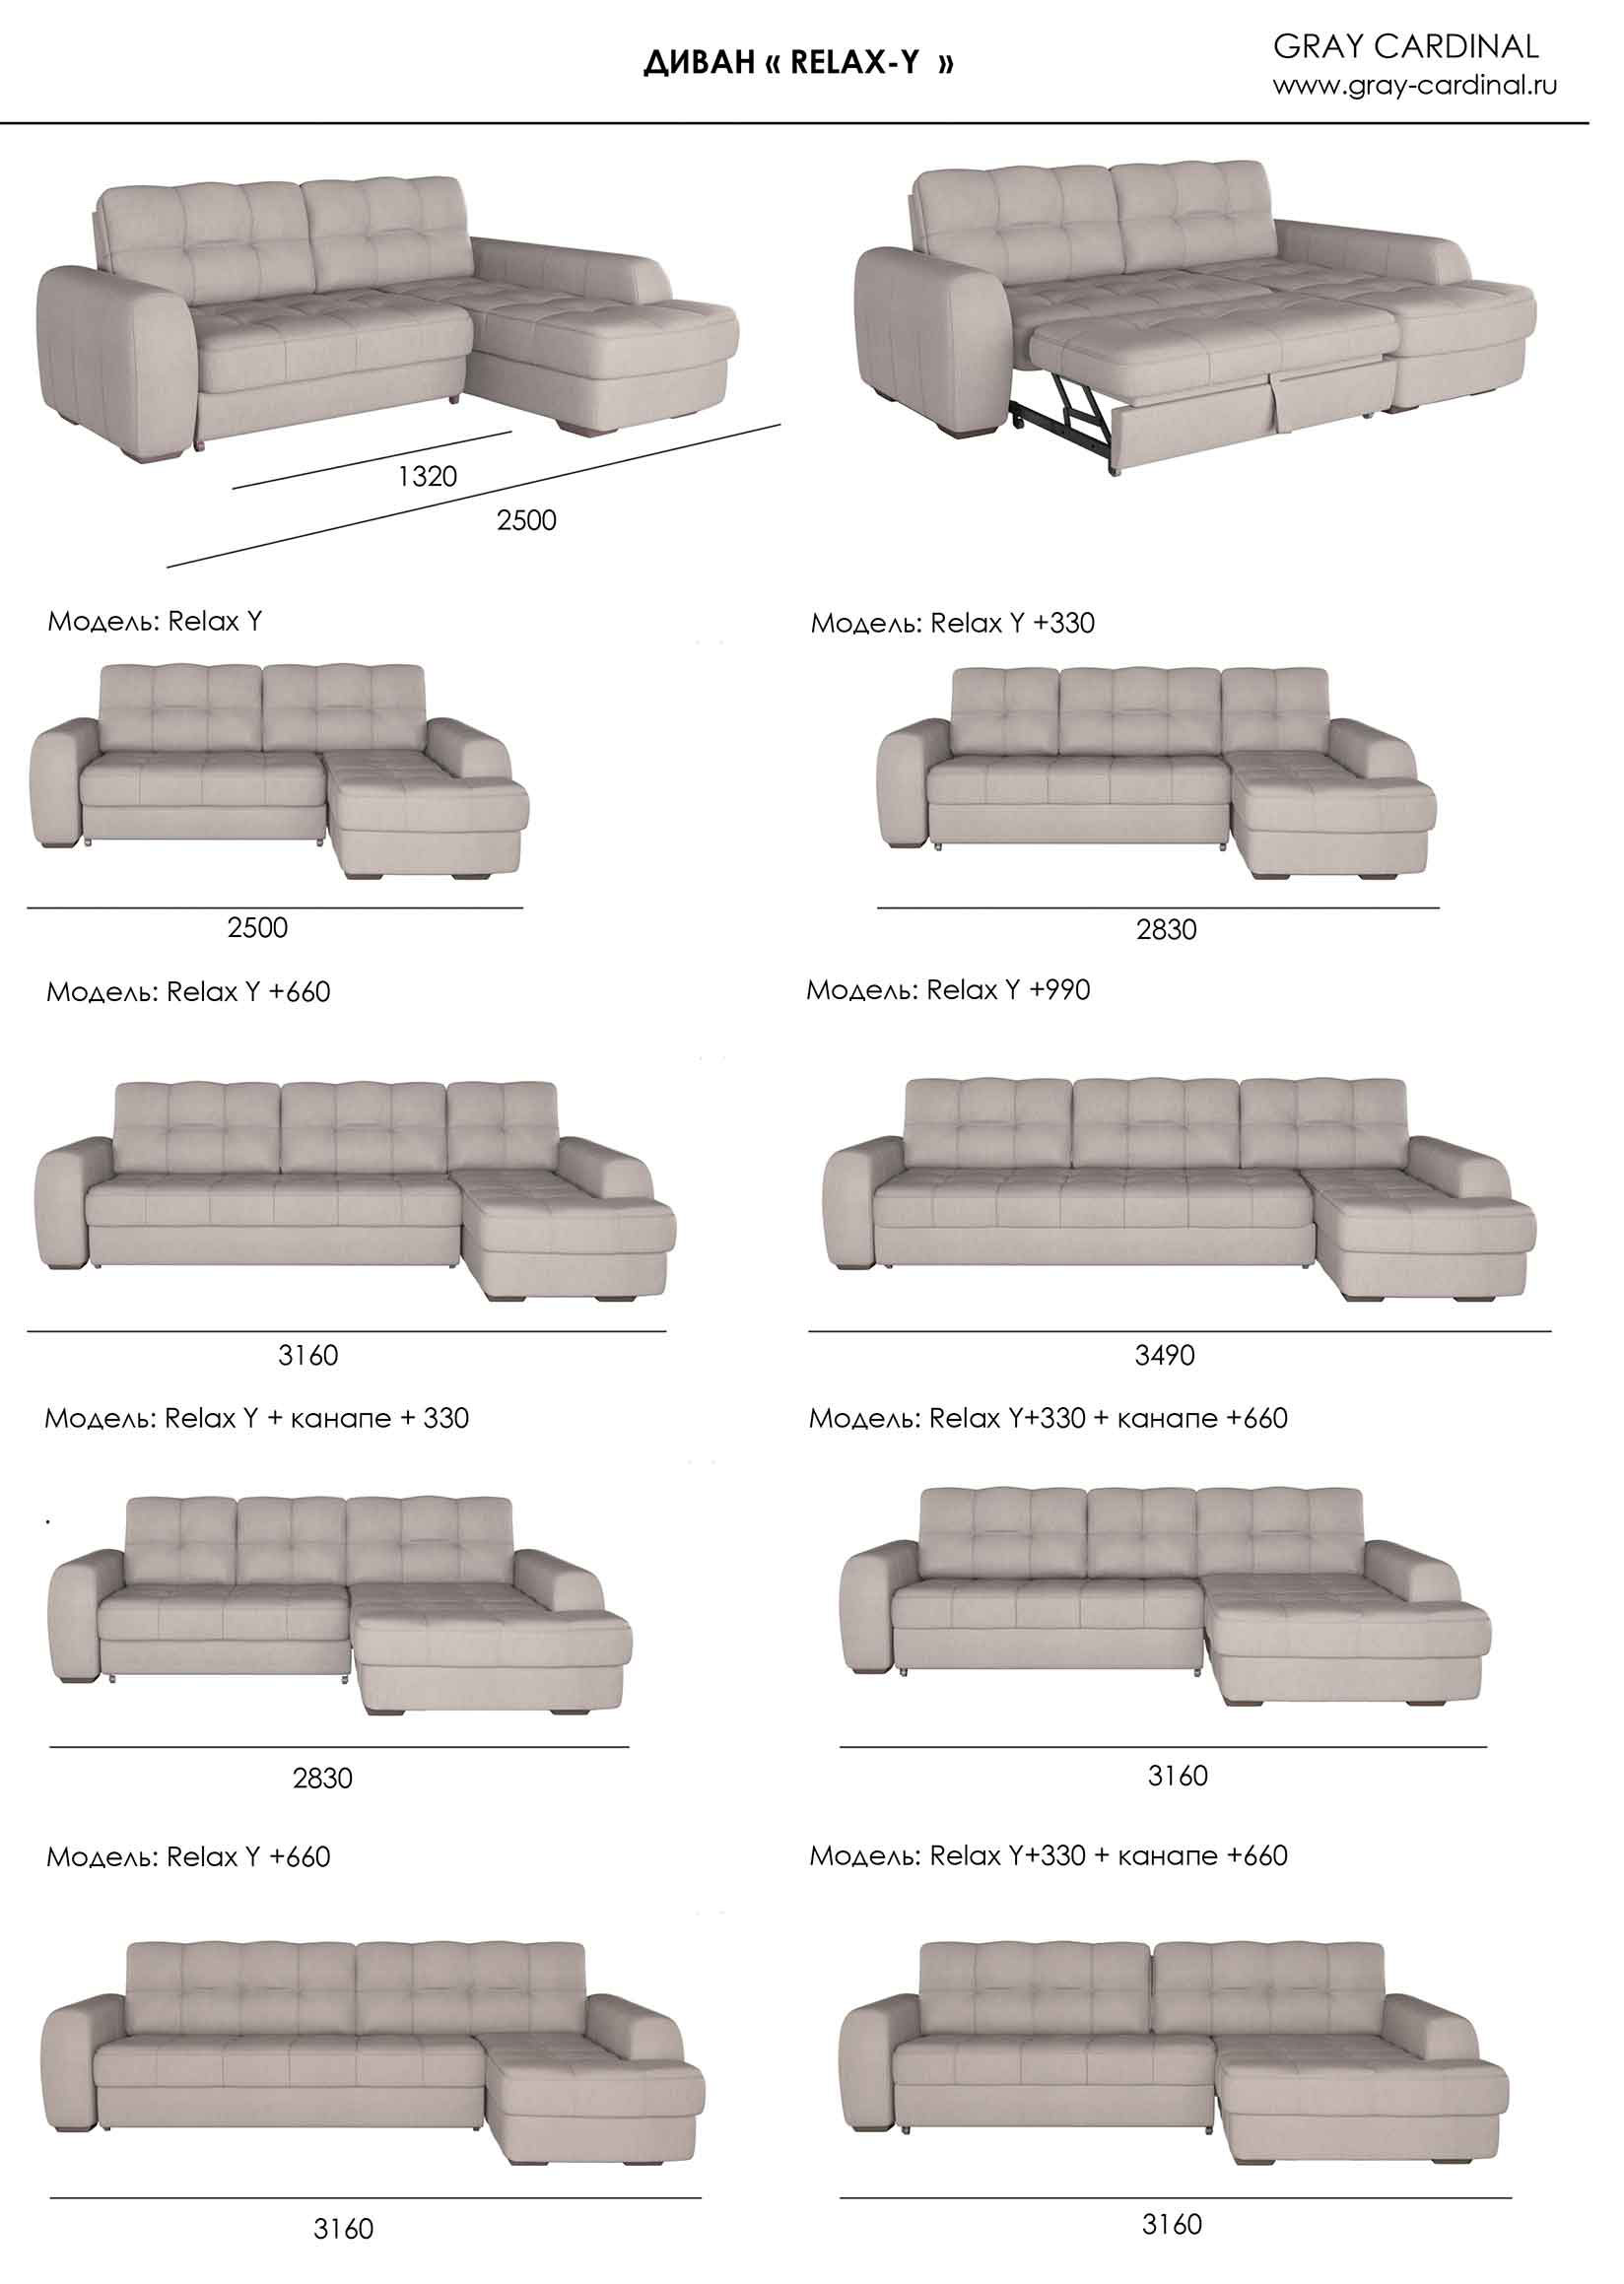 Угловой диван Relax от производителя - фабрика Gray Cardinal